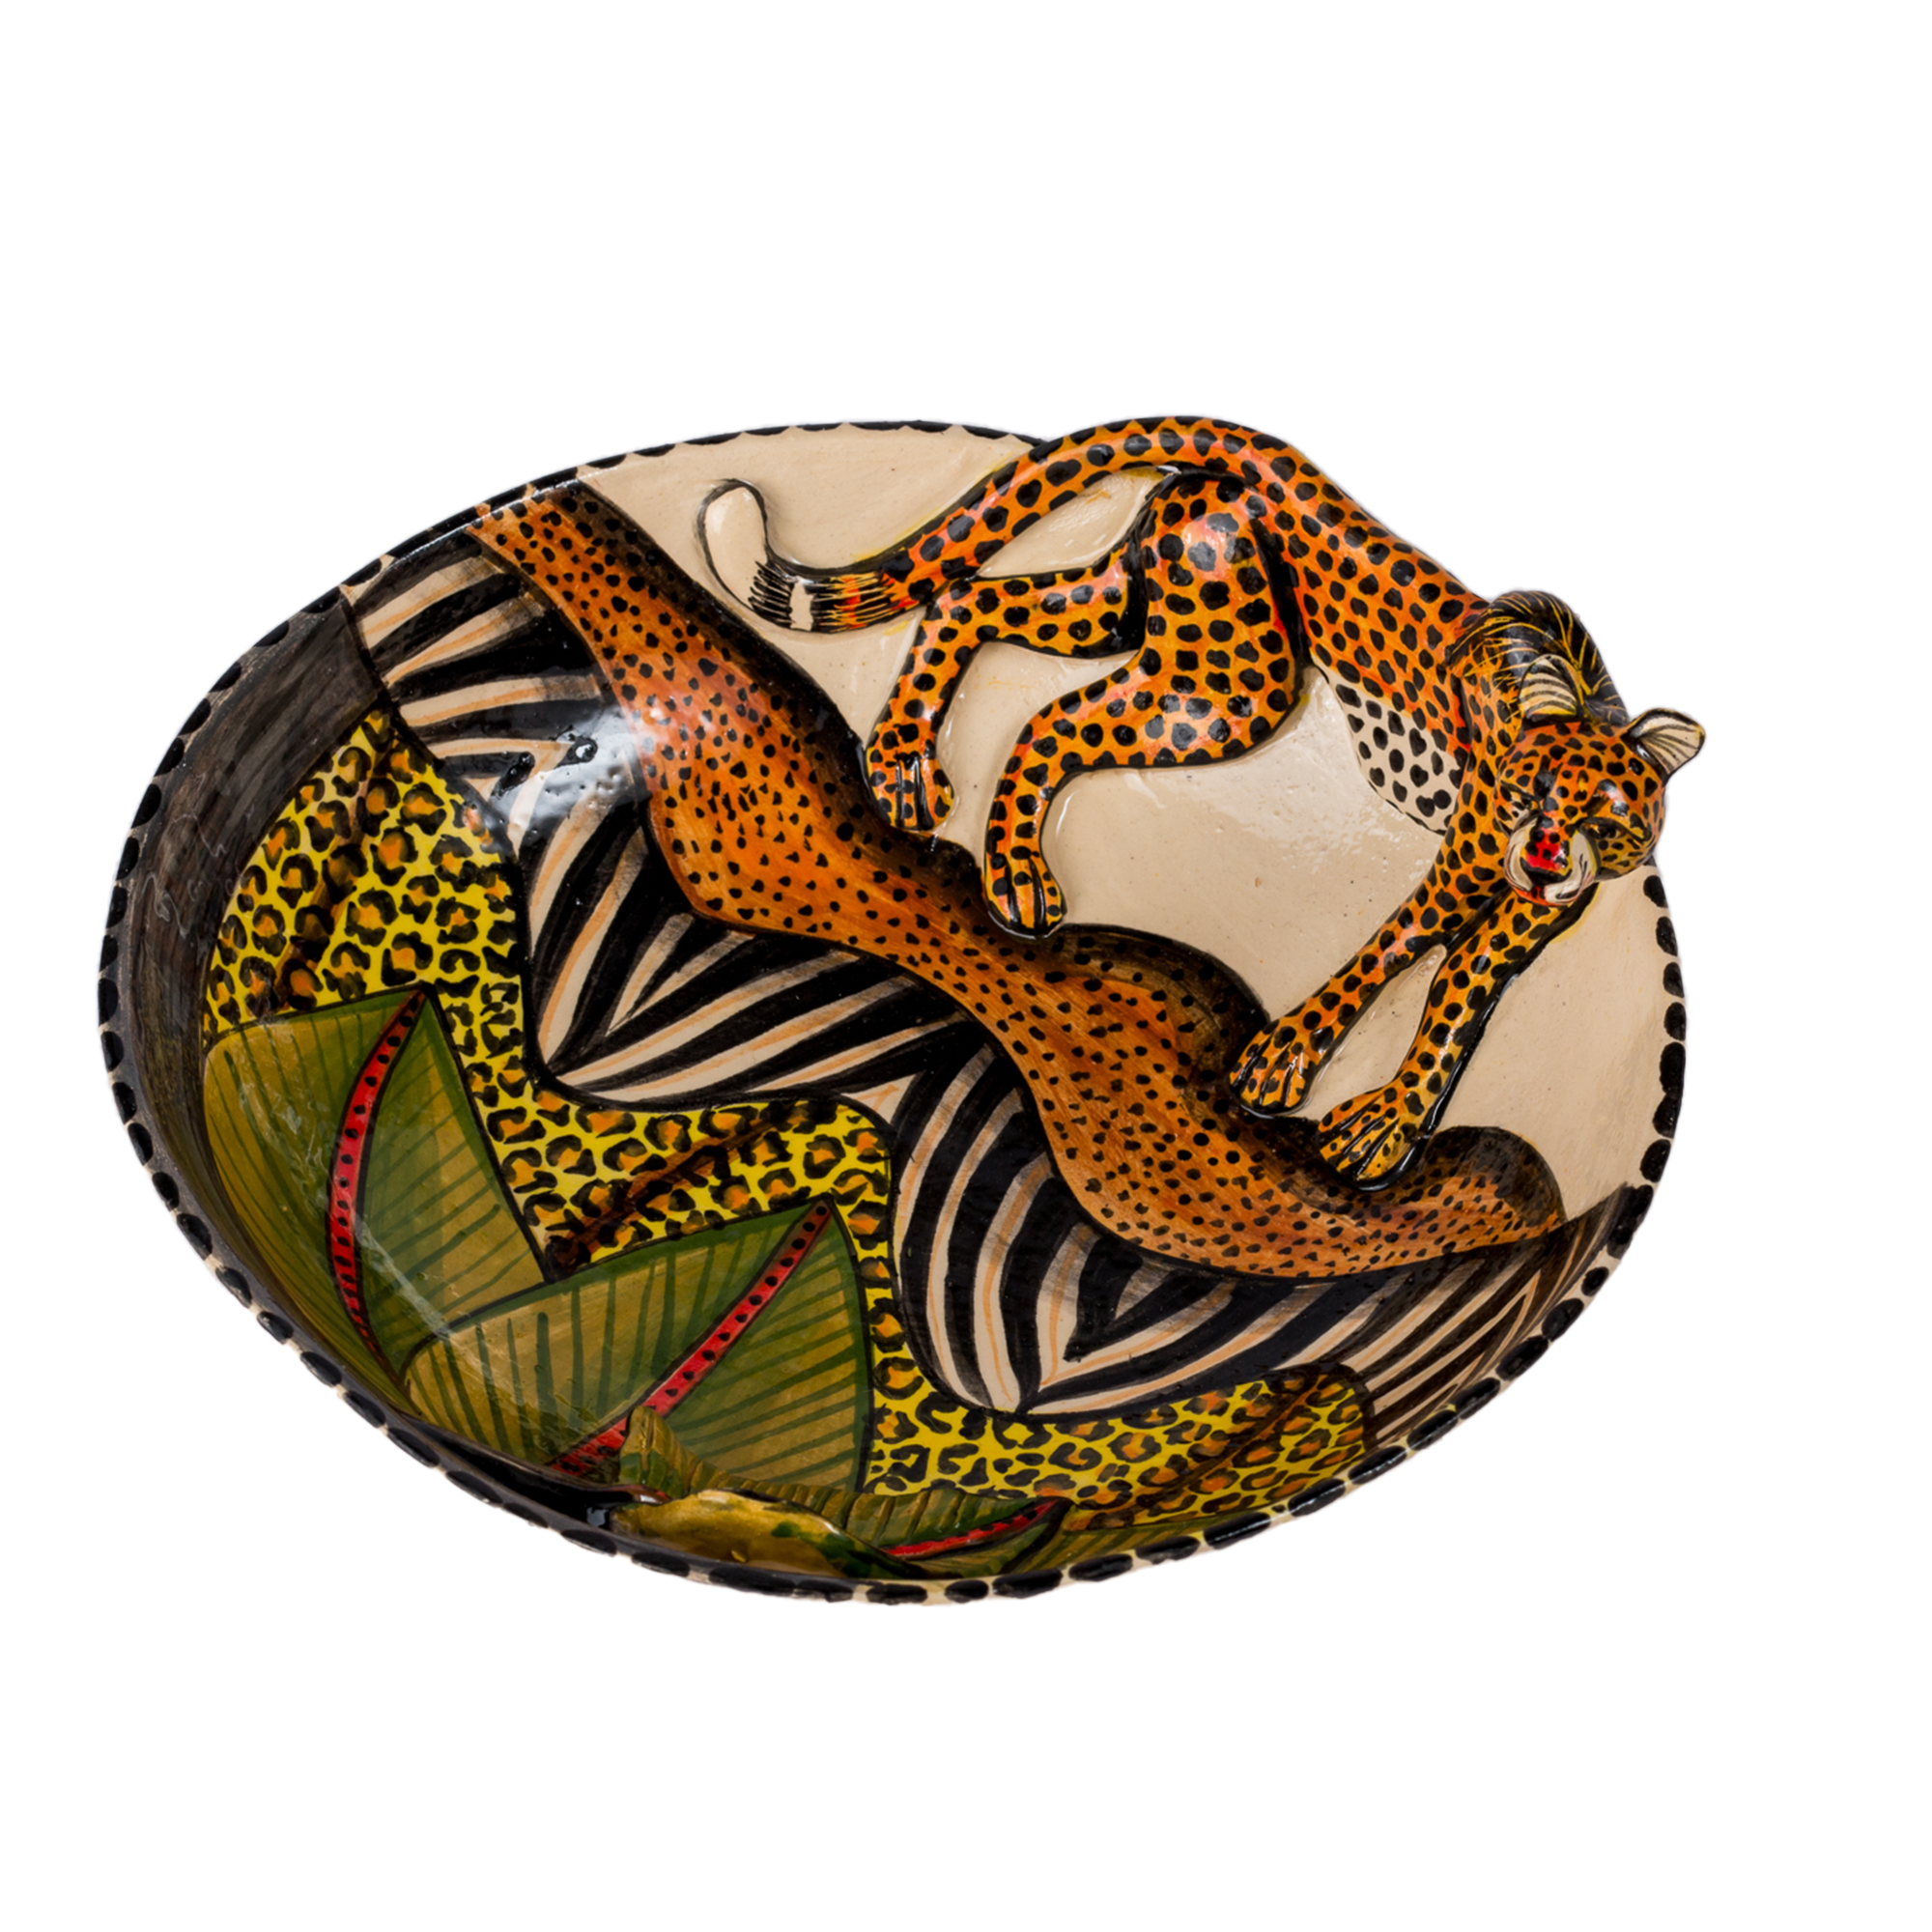 3D Animated Ceramic Cheetah Bowl